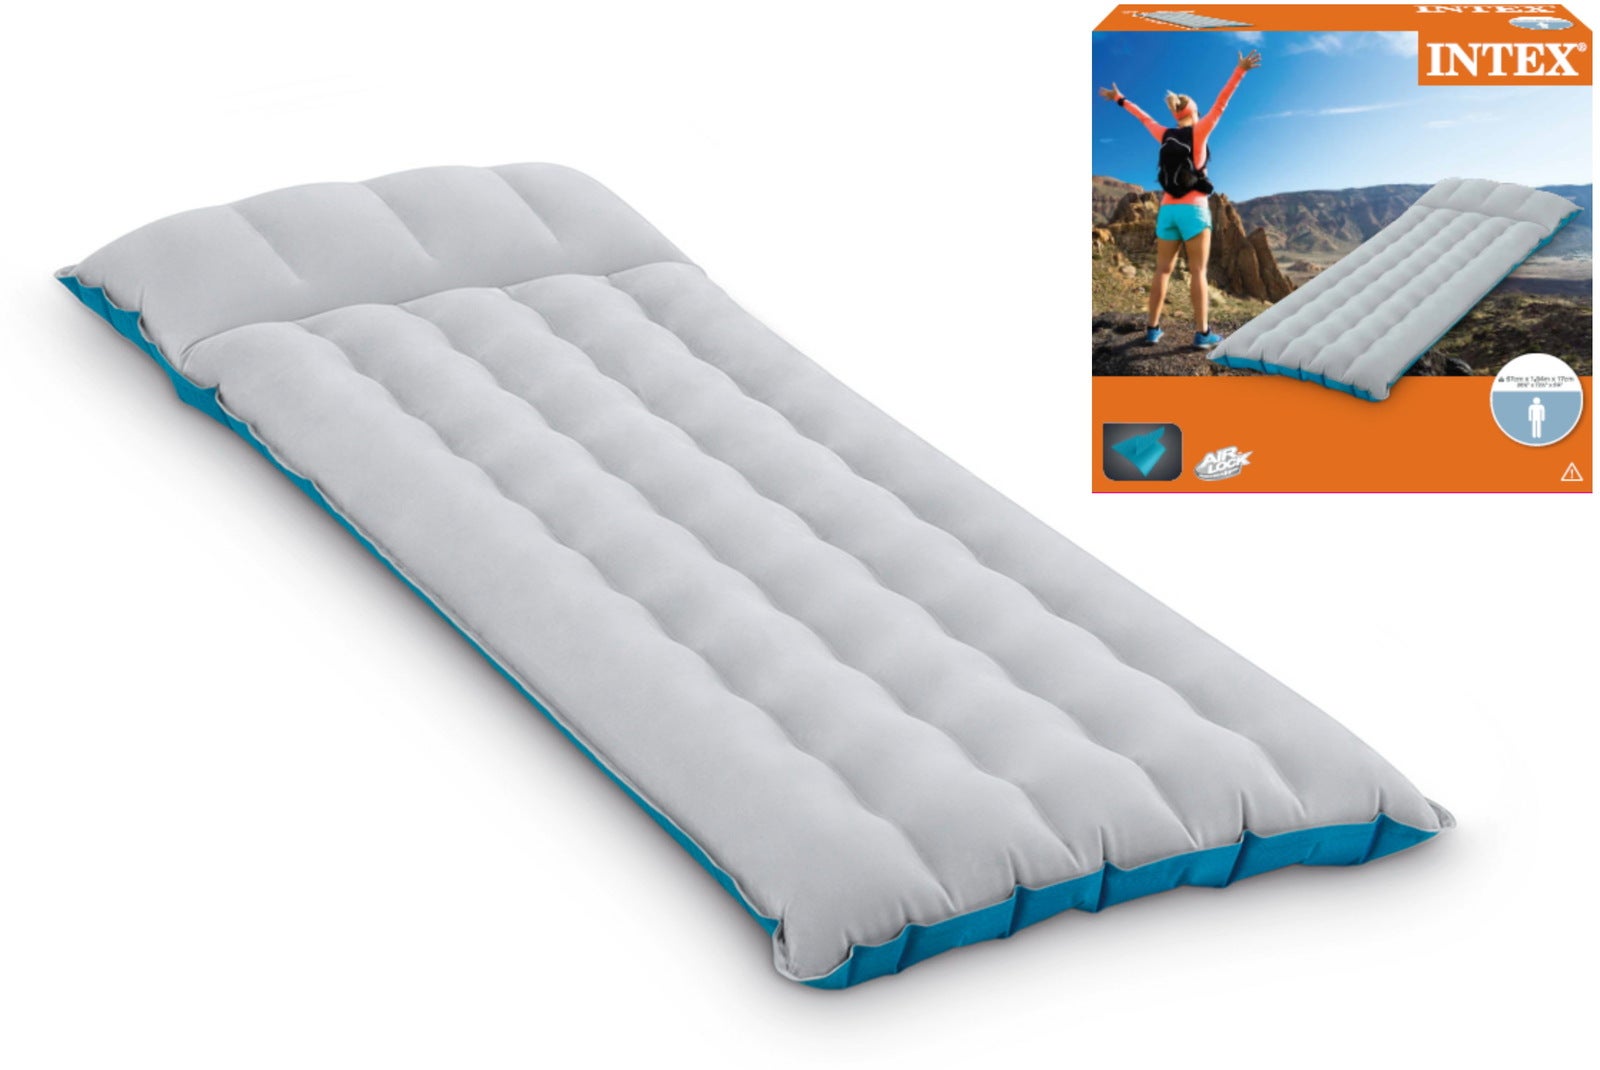 intex camping air mattress reviews